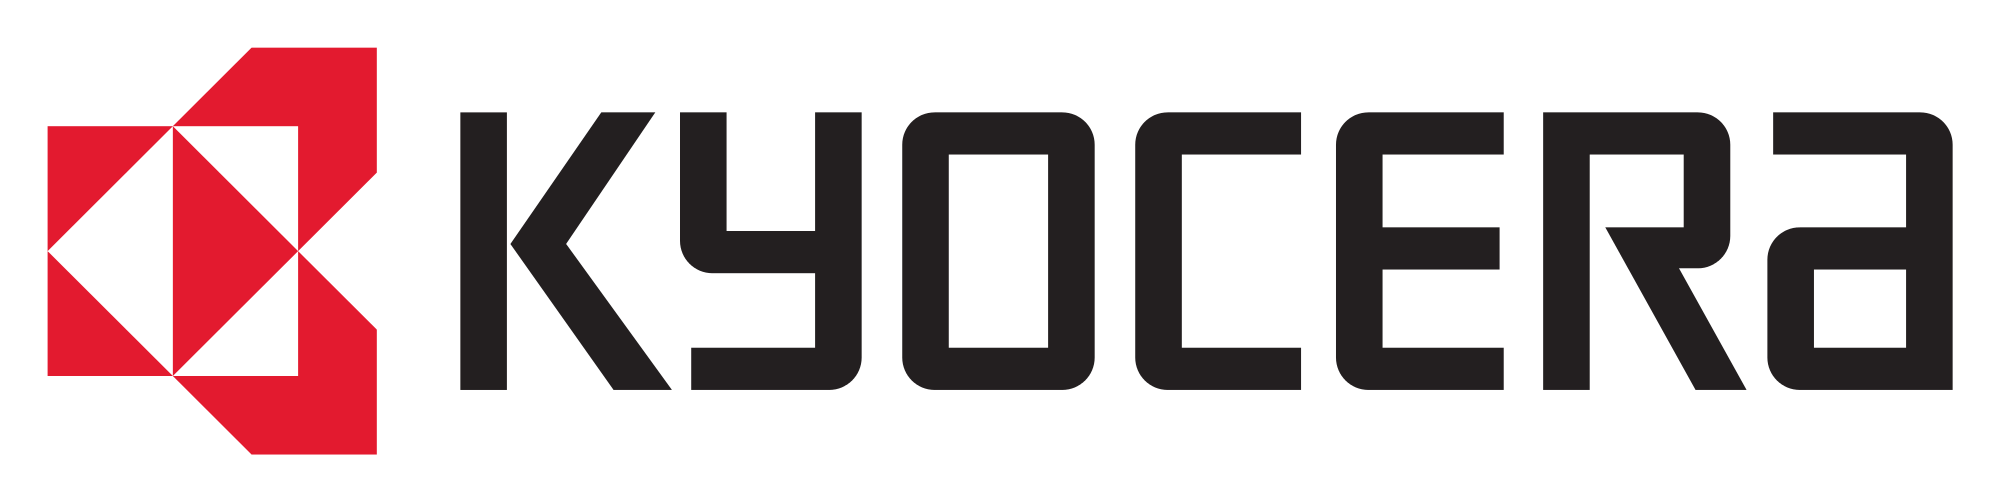 Kyocera Brand Logo